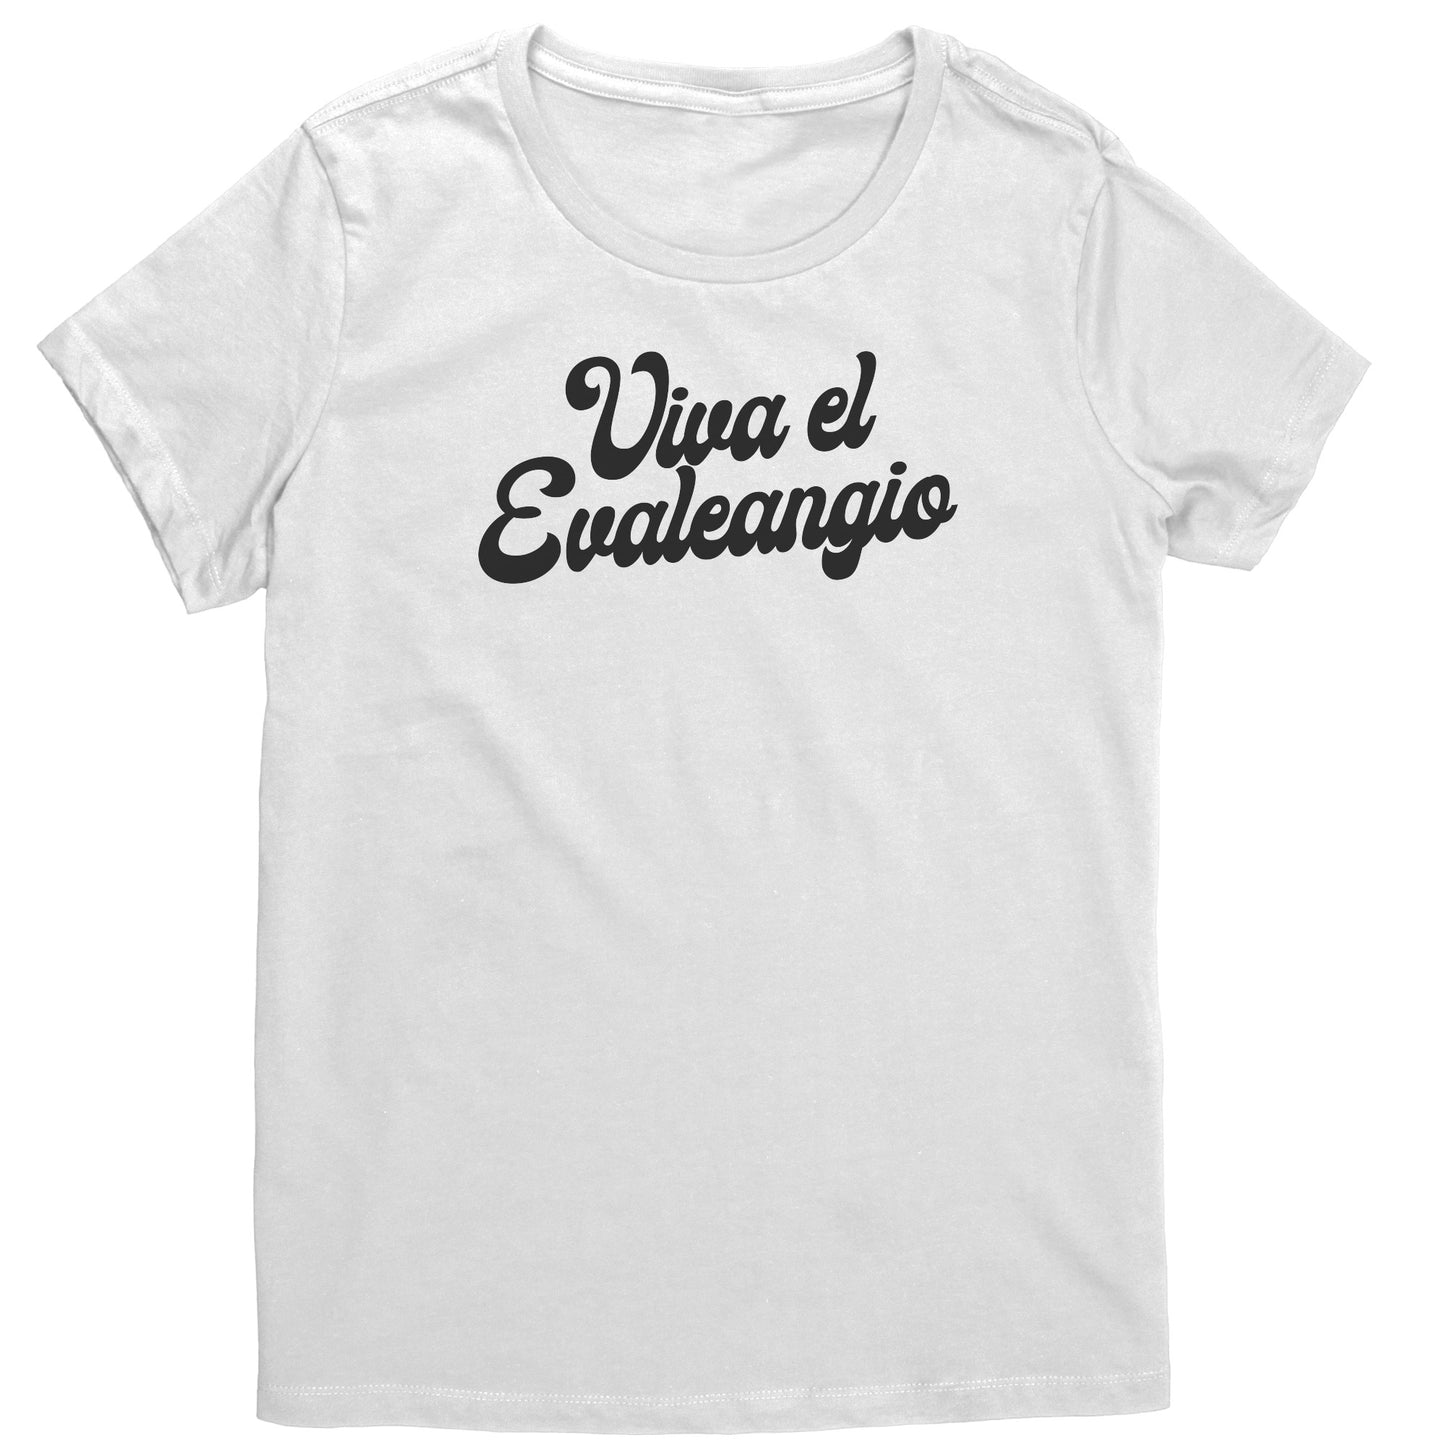 Viva el Evaleangio Women's T-Shirt Part 1